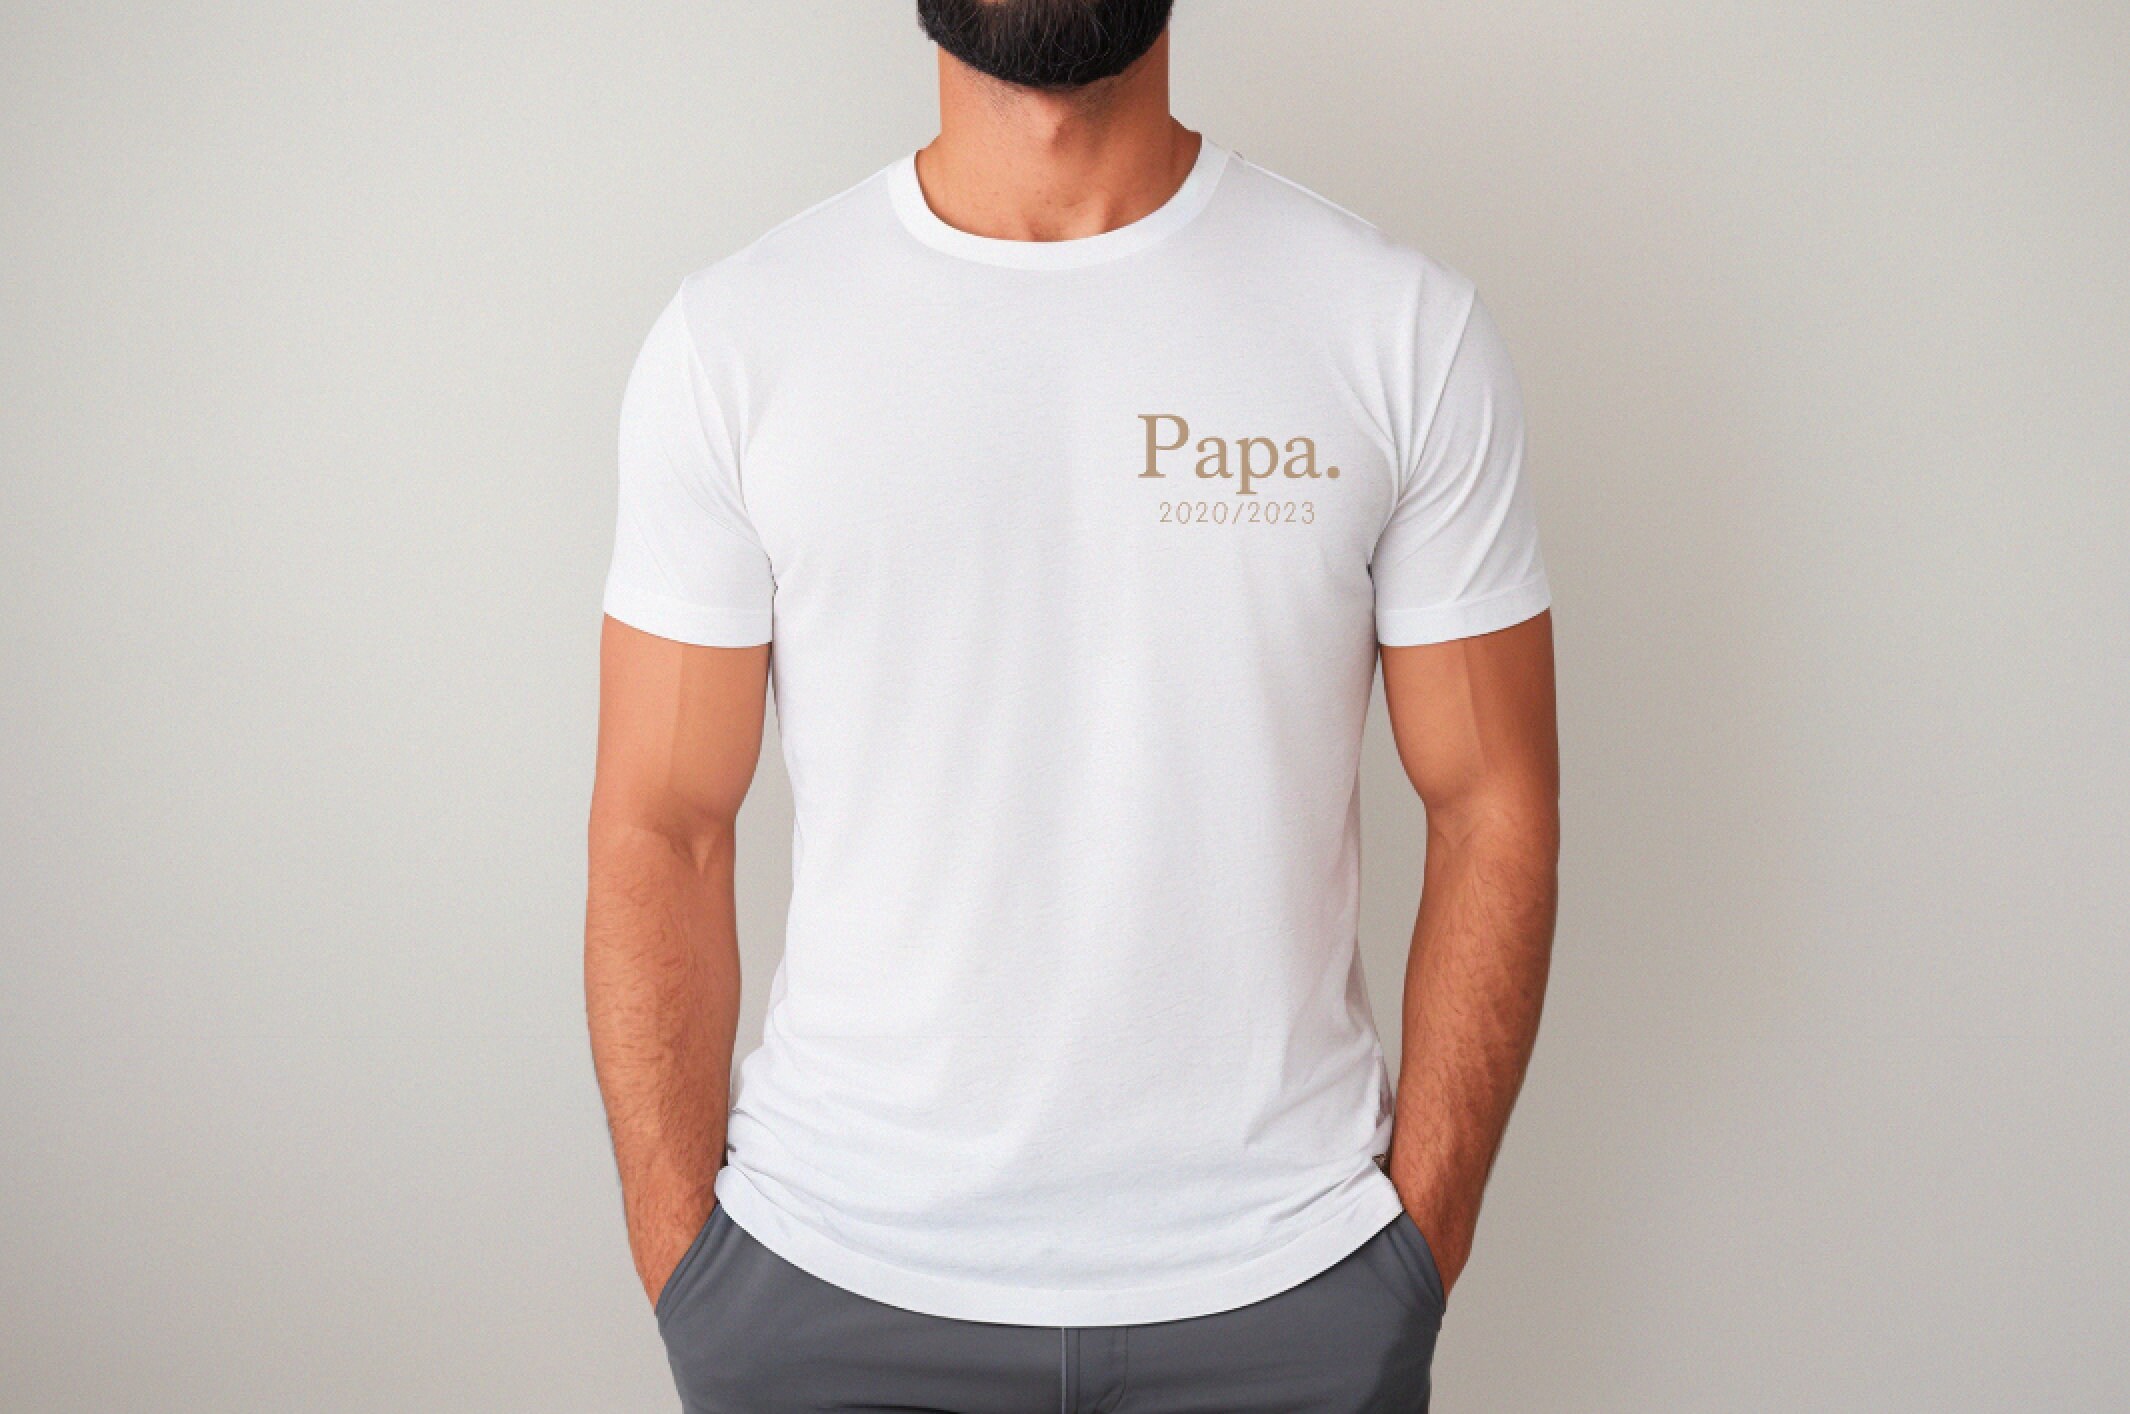 le roi de la chasse, cadeau chasseur, papa,papy' T-shirt Homme